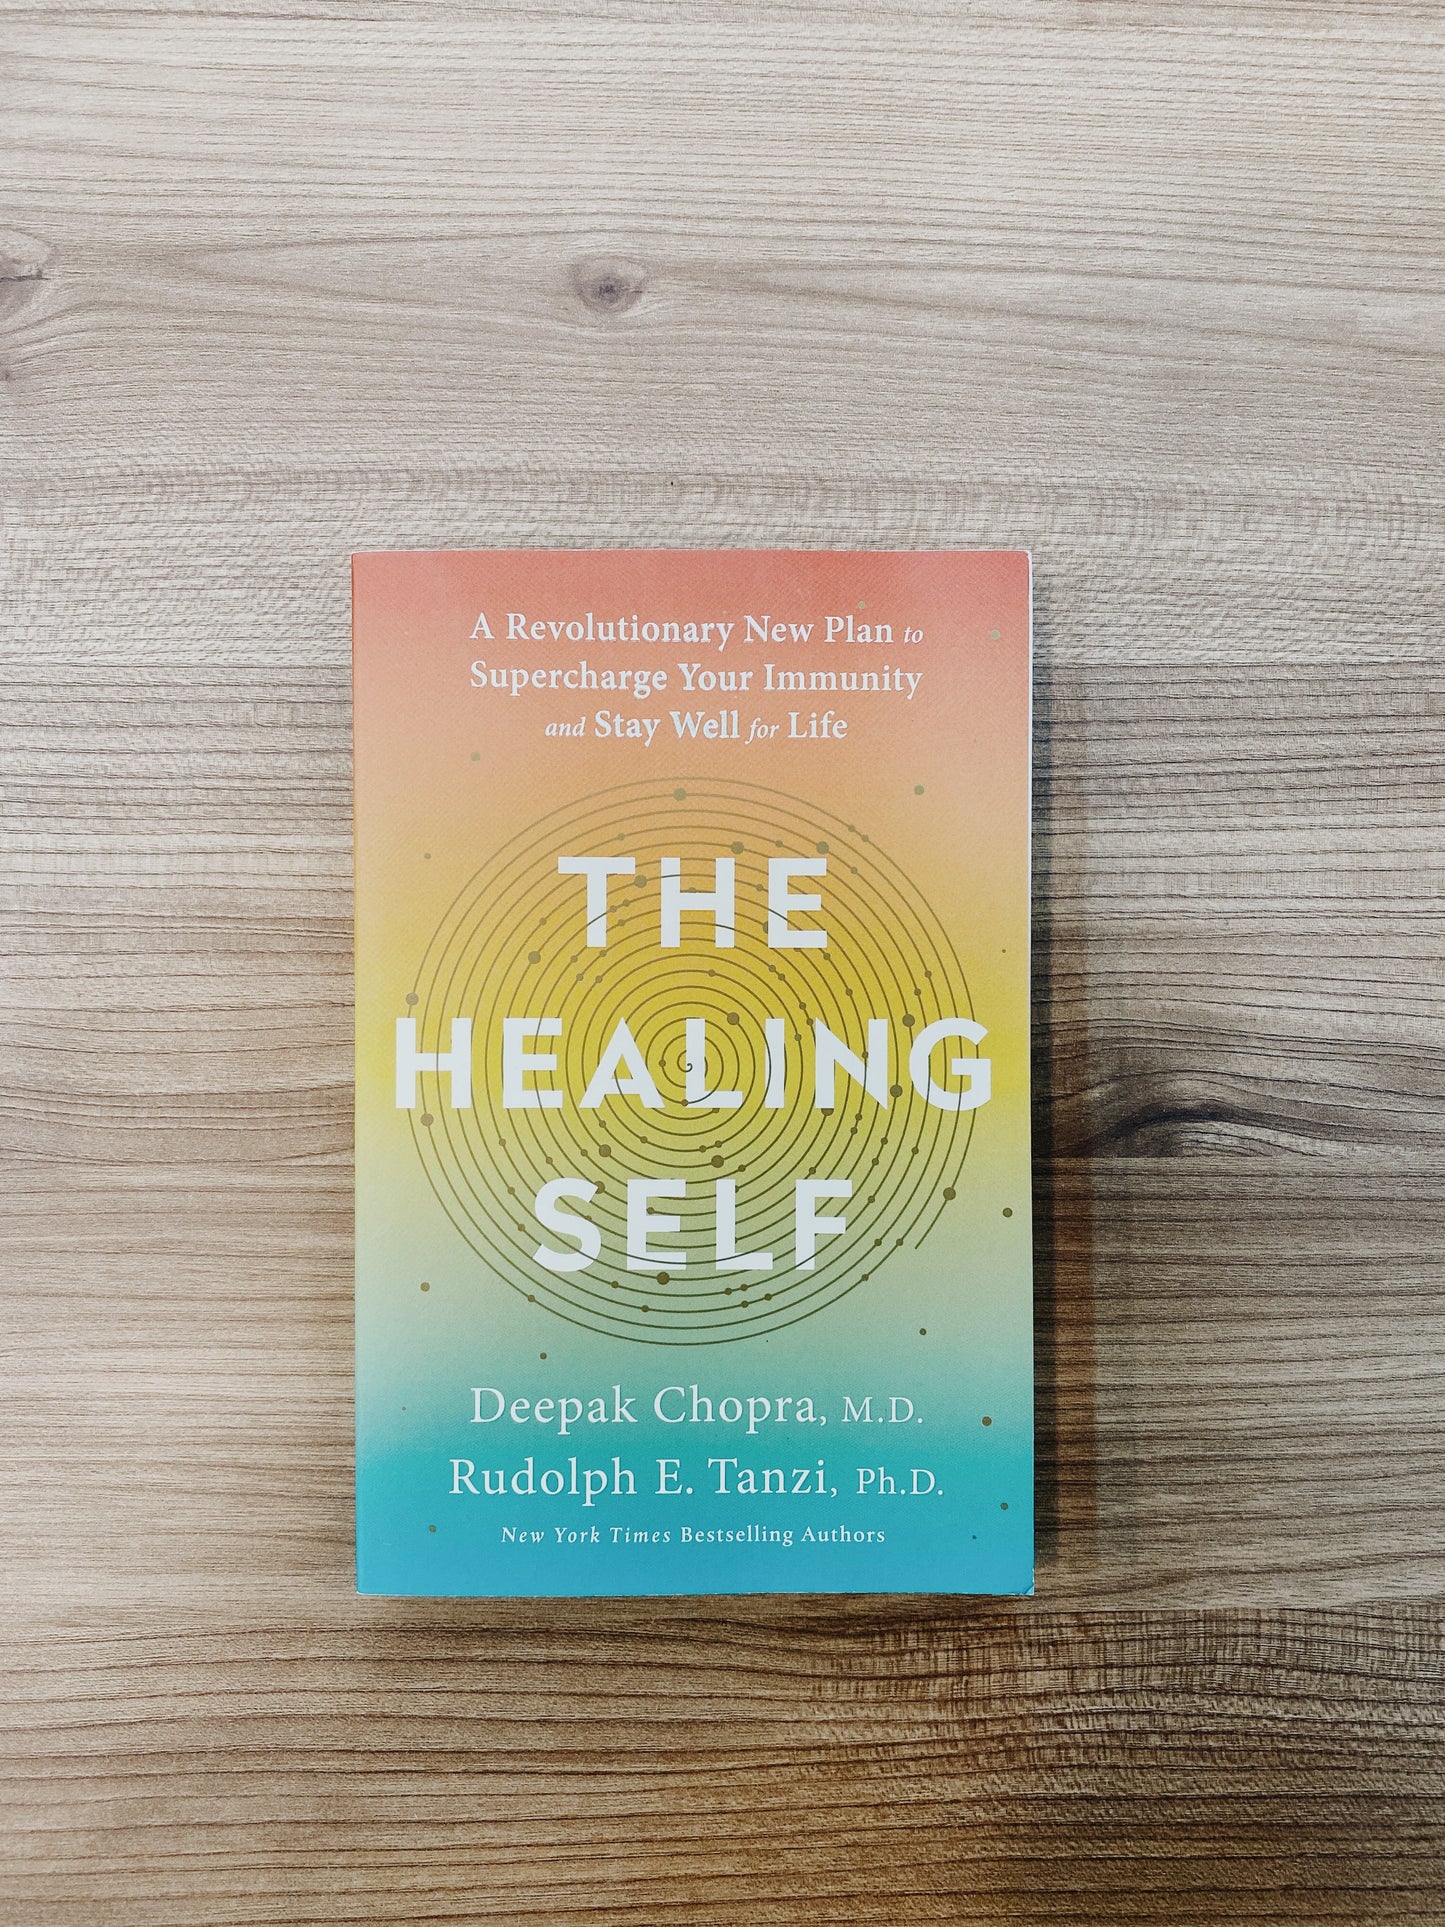 Deepak Chopra - The Healing Self